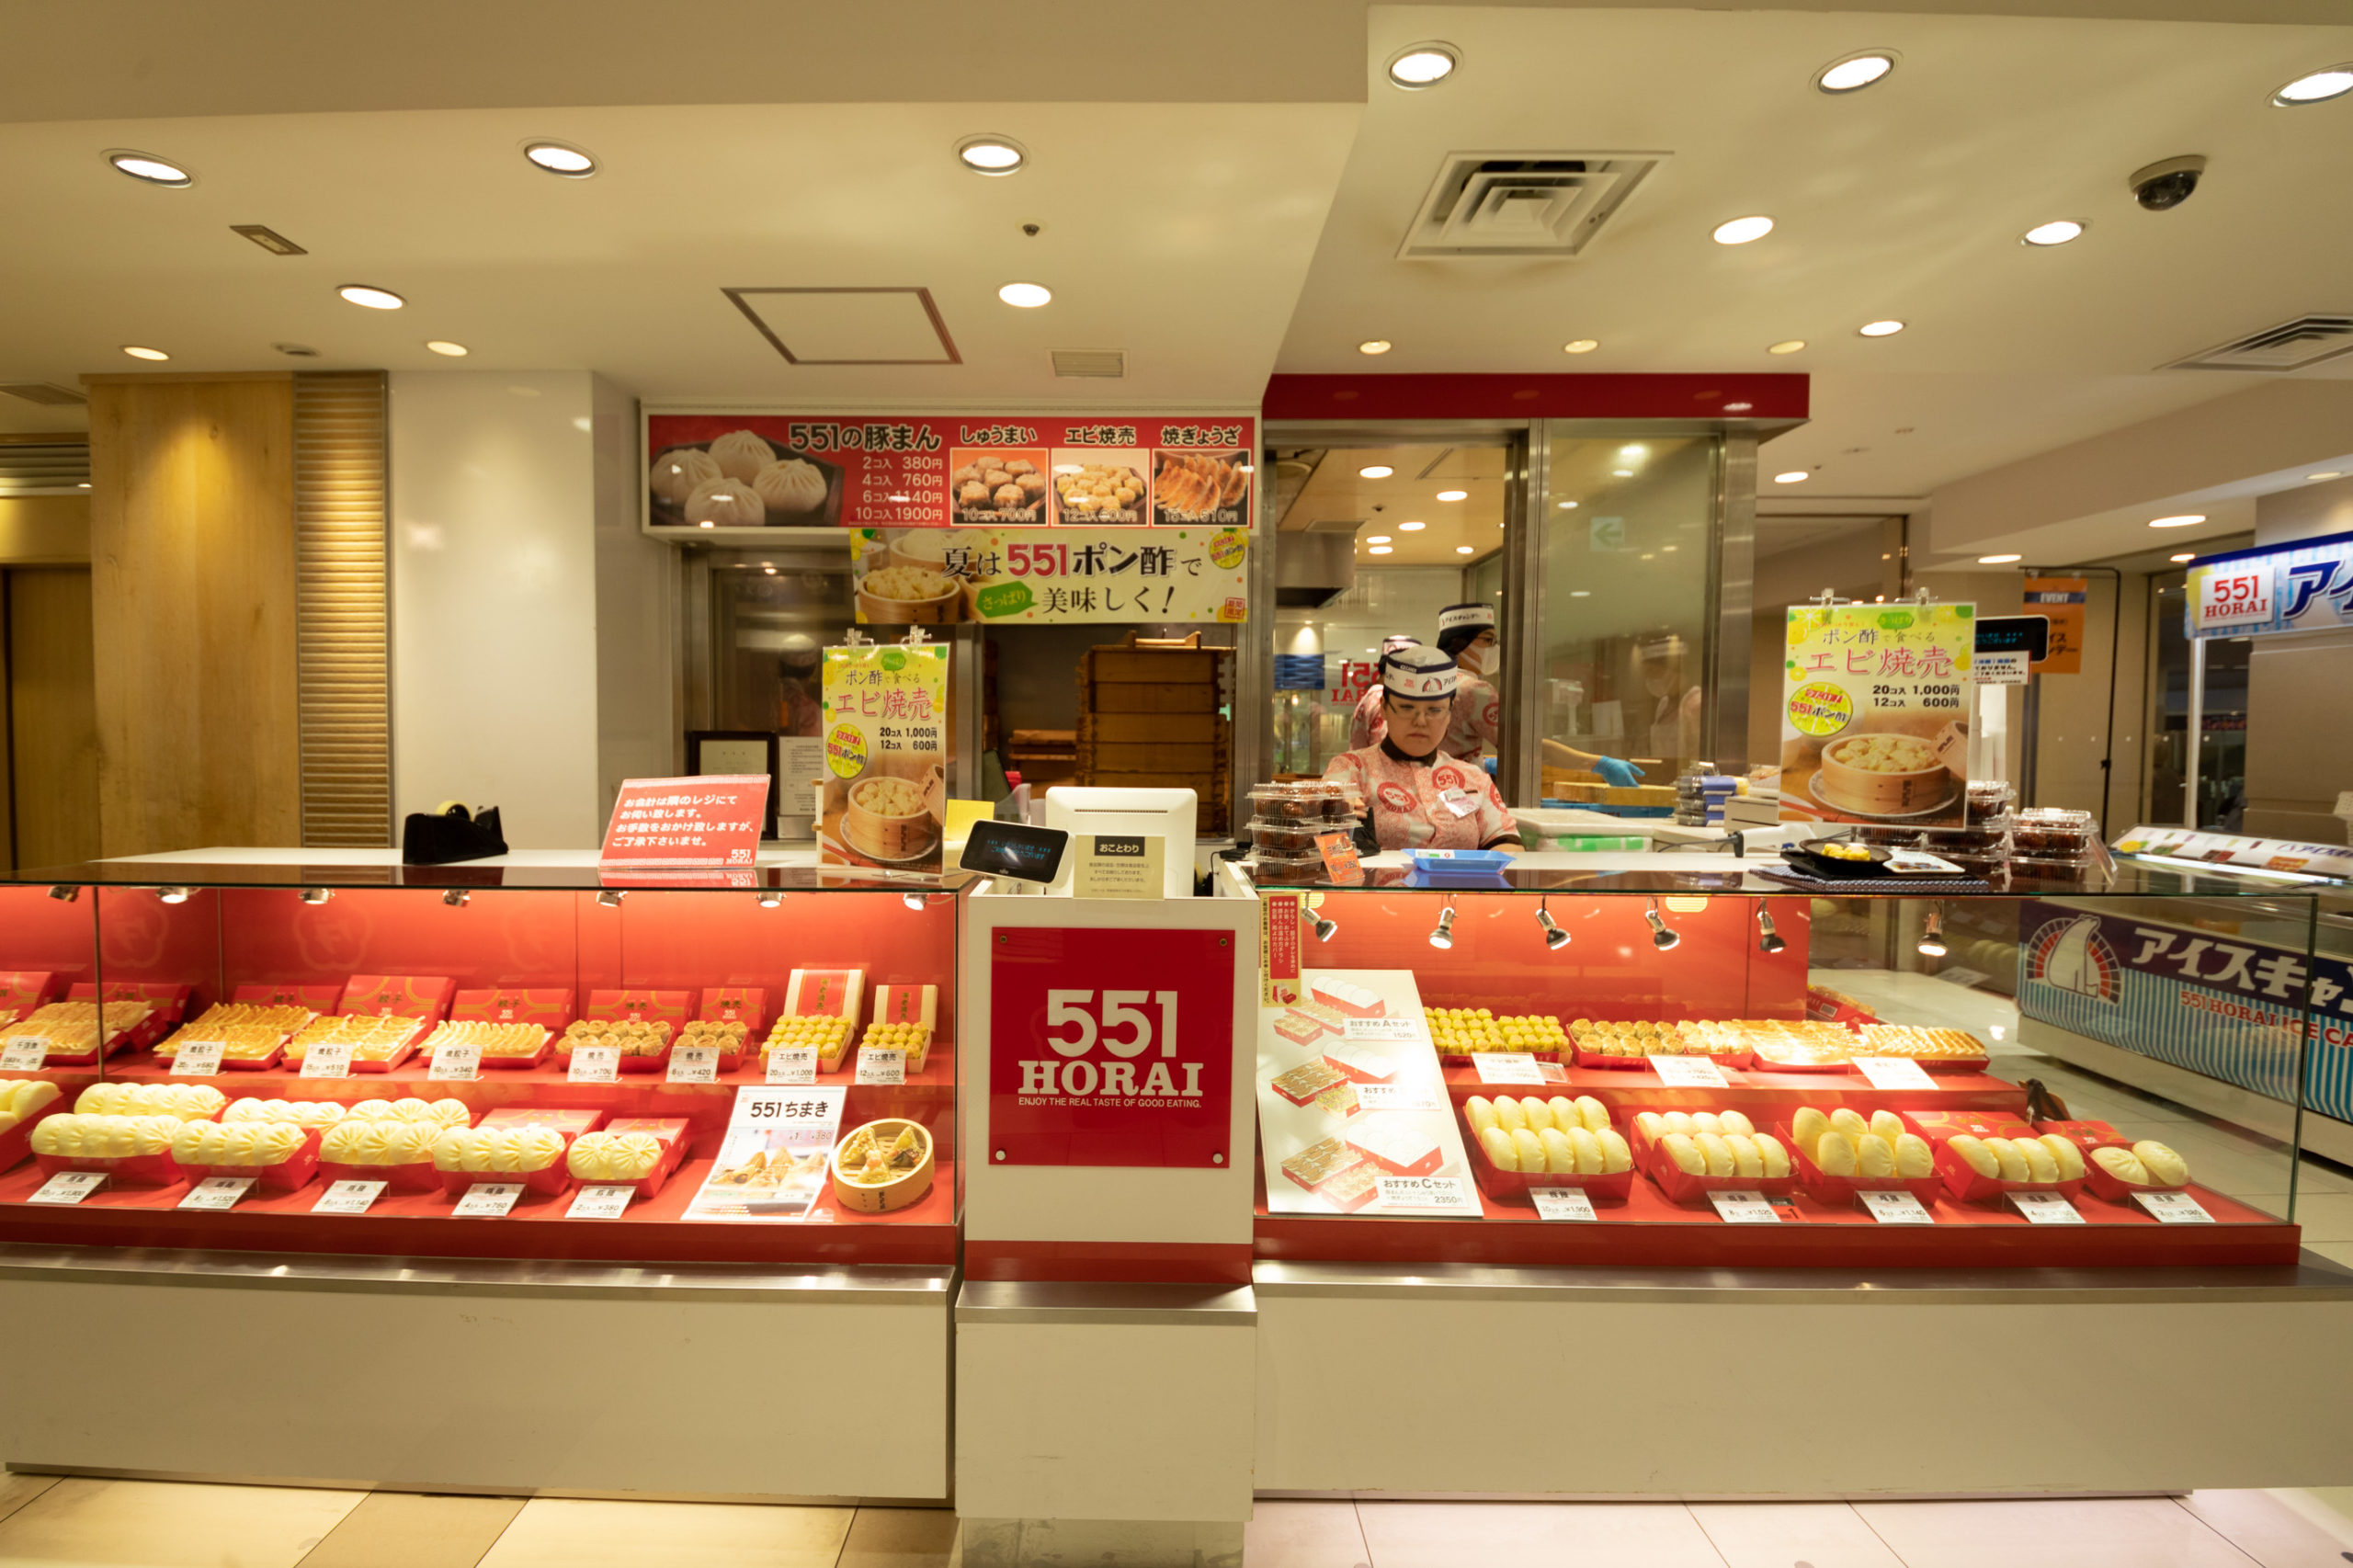 梅田大丸店 2ヶ所 お店を探す 551horai 蓬莱 大阪名物の豚まん 肉まん